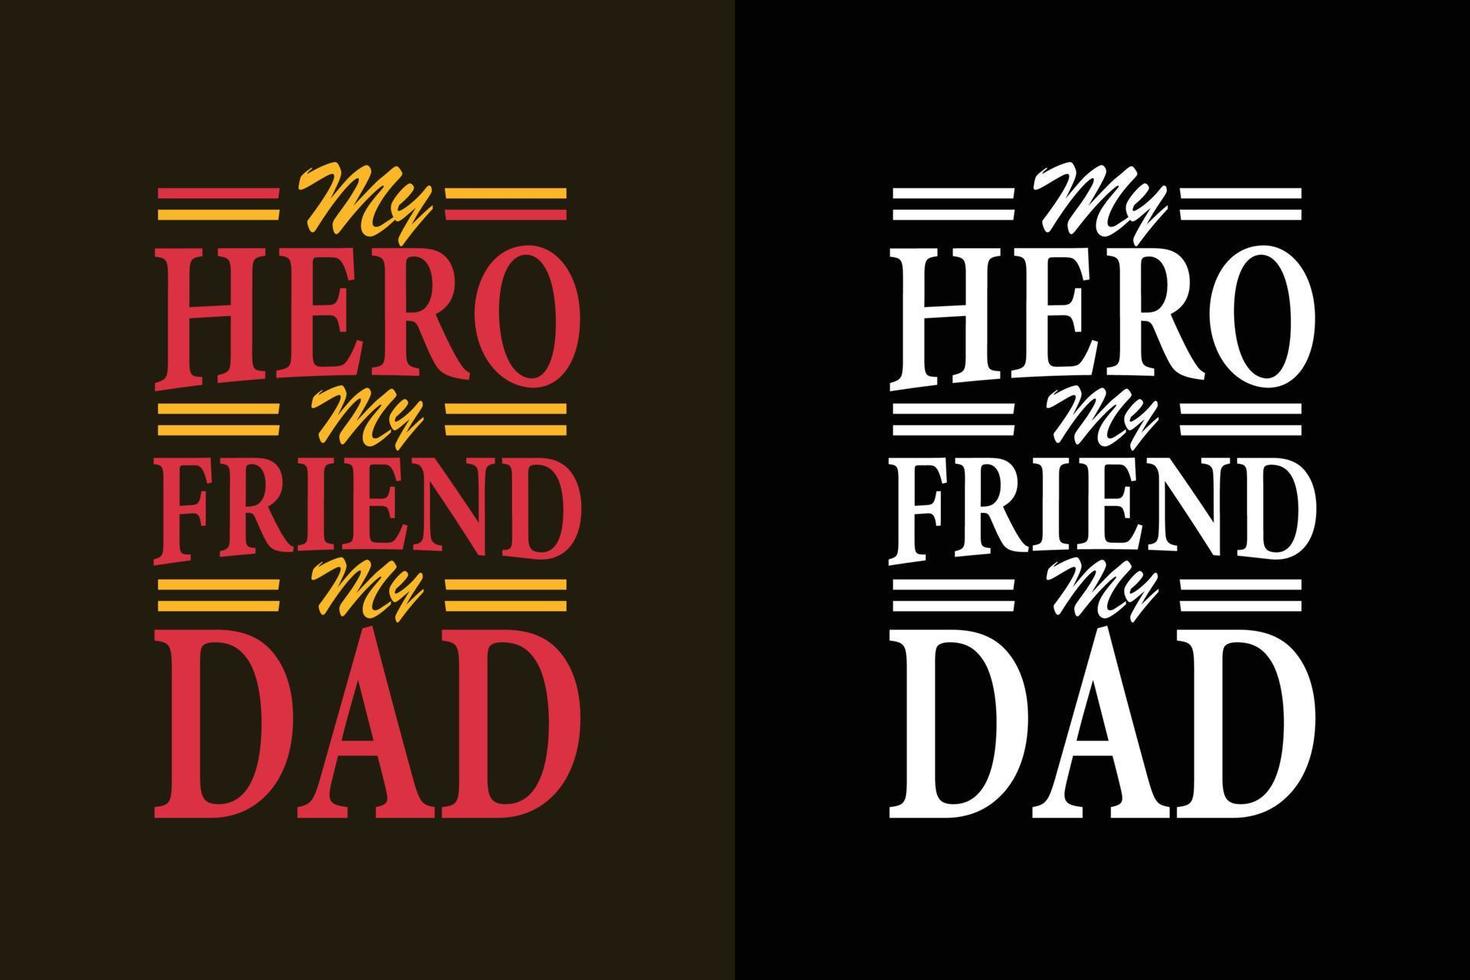 mi héroe mi amigo mi papá día del padre o papá camiseta eslogan citas vector